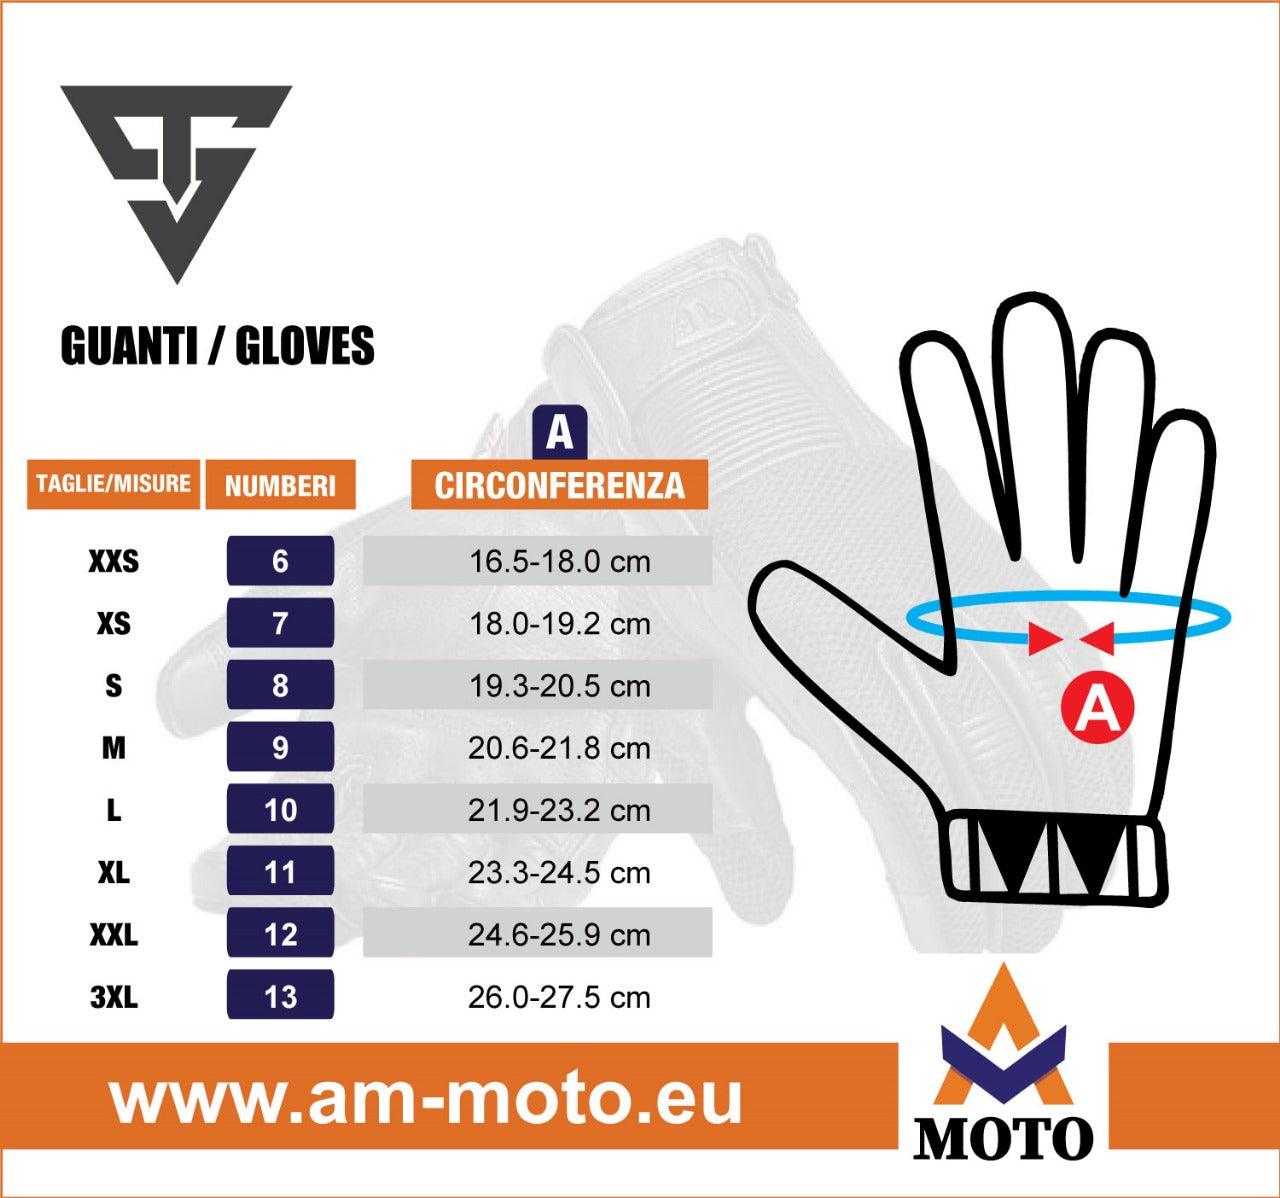 Aquila_Gloves_size_Chart_6c7d9486-22f4-44fe-9f1a-b8adddc46339 - Am Moto-Abbigliamento Moto